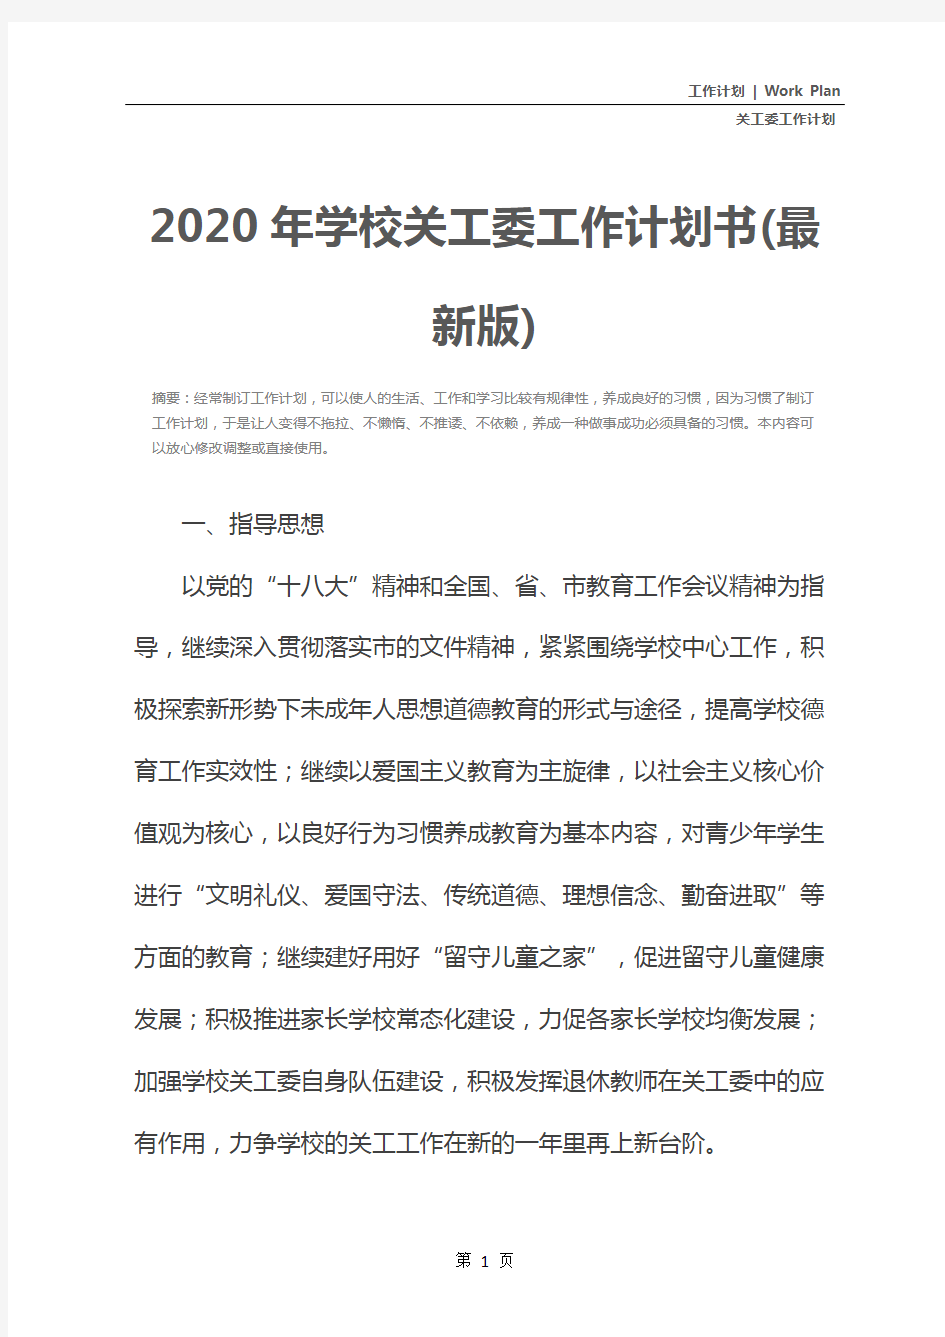 2020年学校关工委工作计划书(最新版)